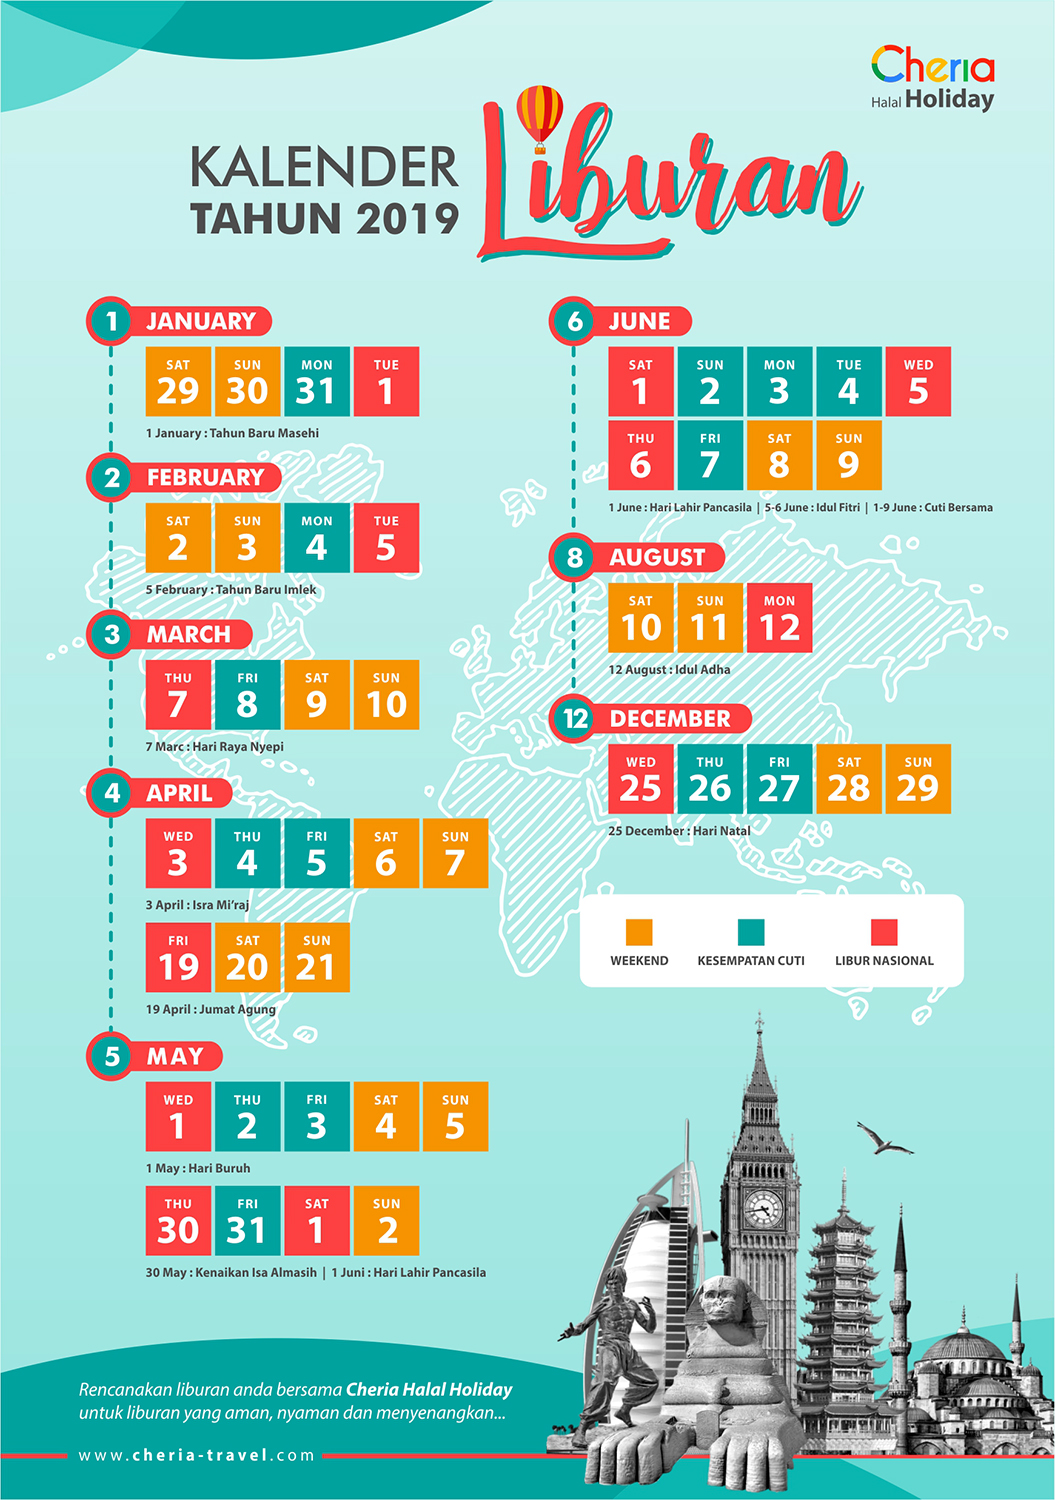 Kalender Lebaran Haji 2019 - Ucapan Lebaran